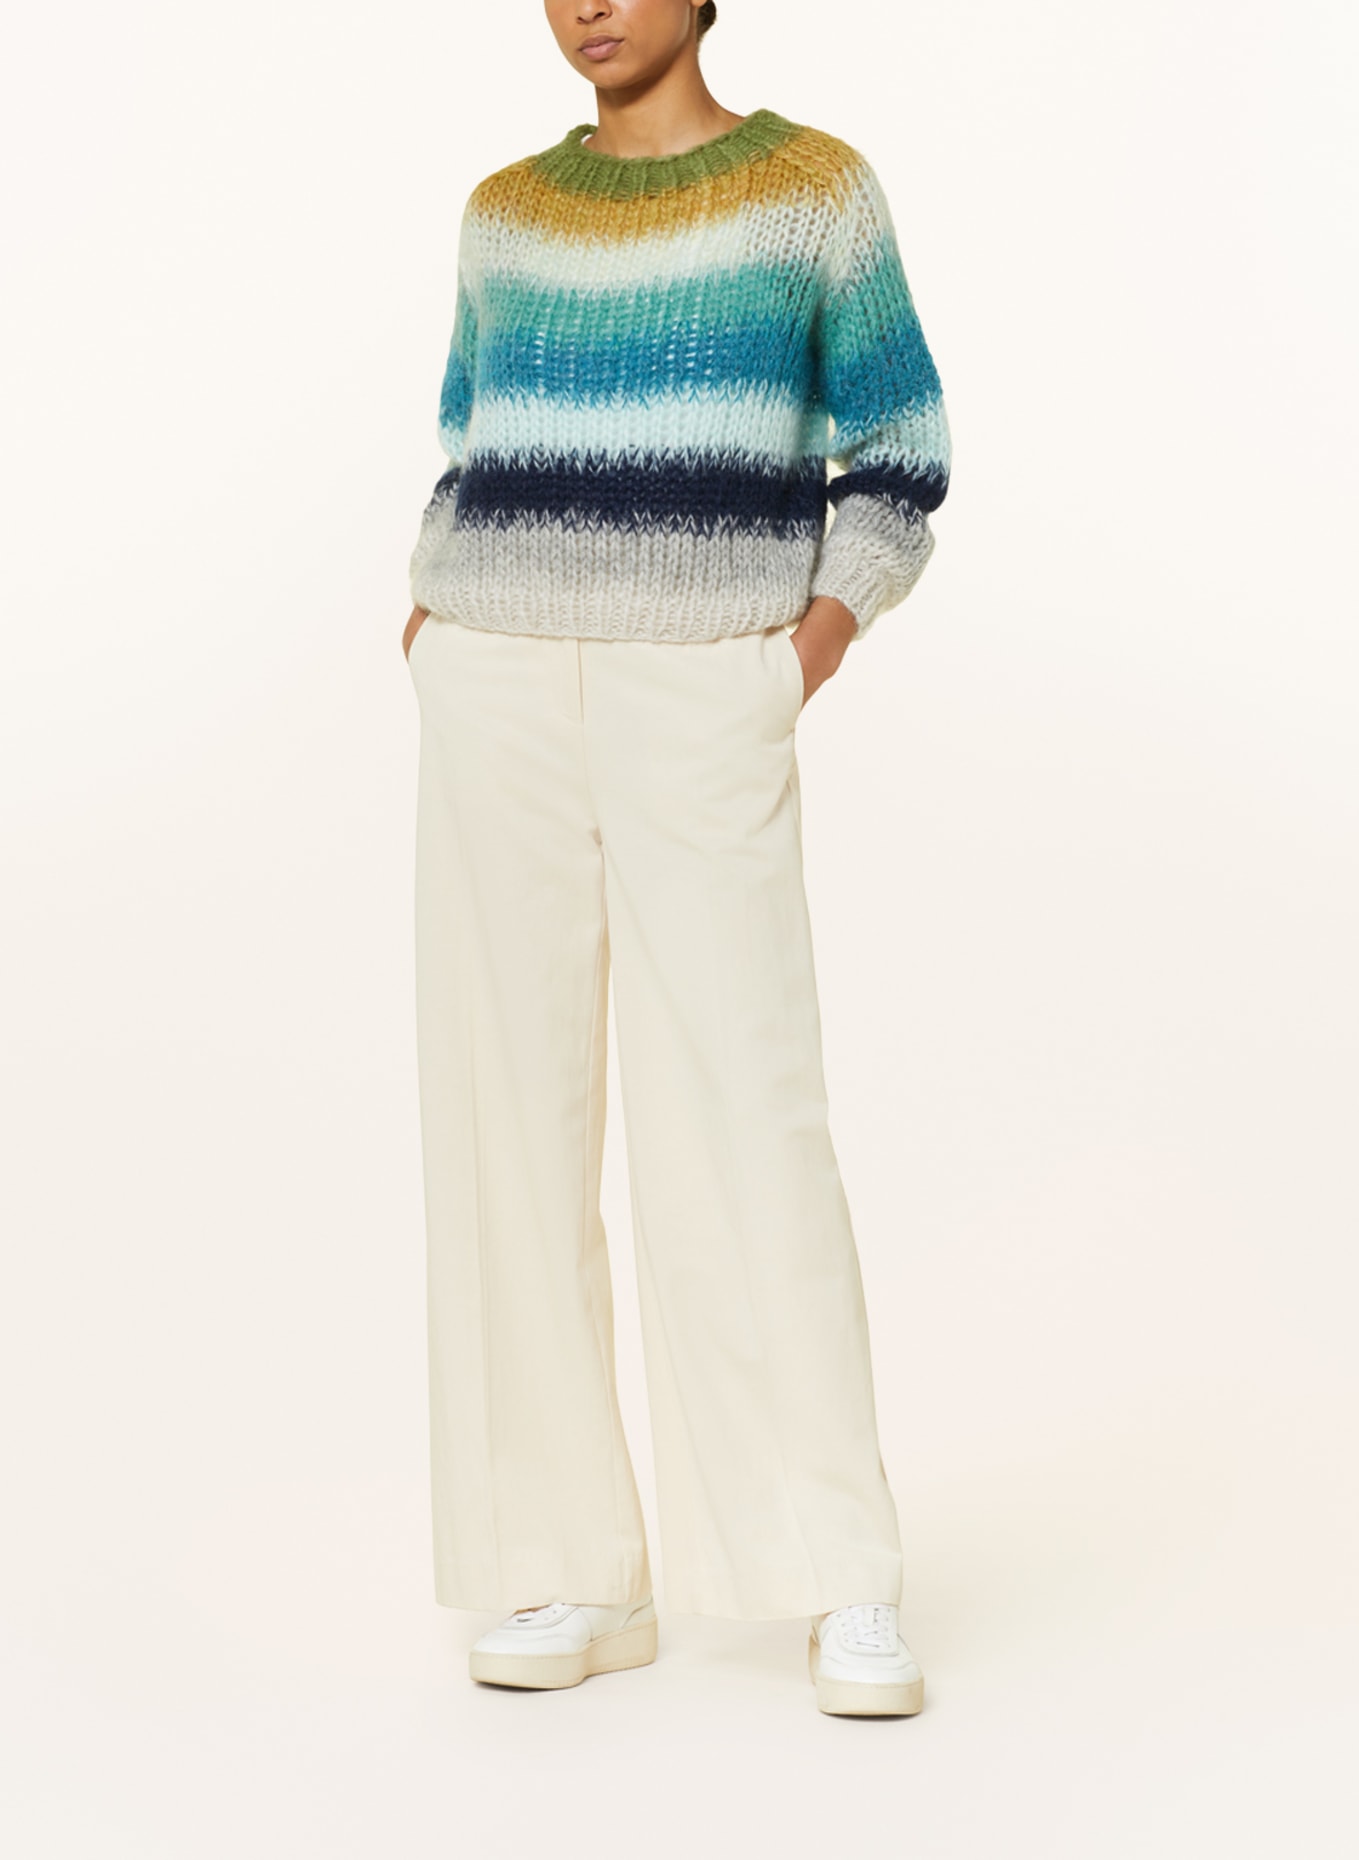 MAIAMI Pullover mit Mohair, Farbe: GRÜN/ BLAU/ GRAU (Bild 2)